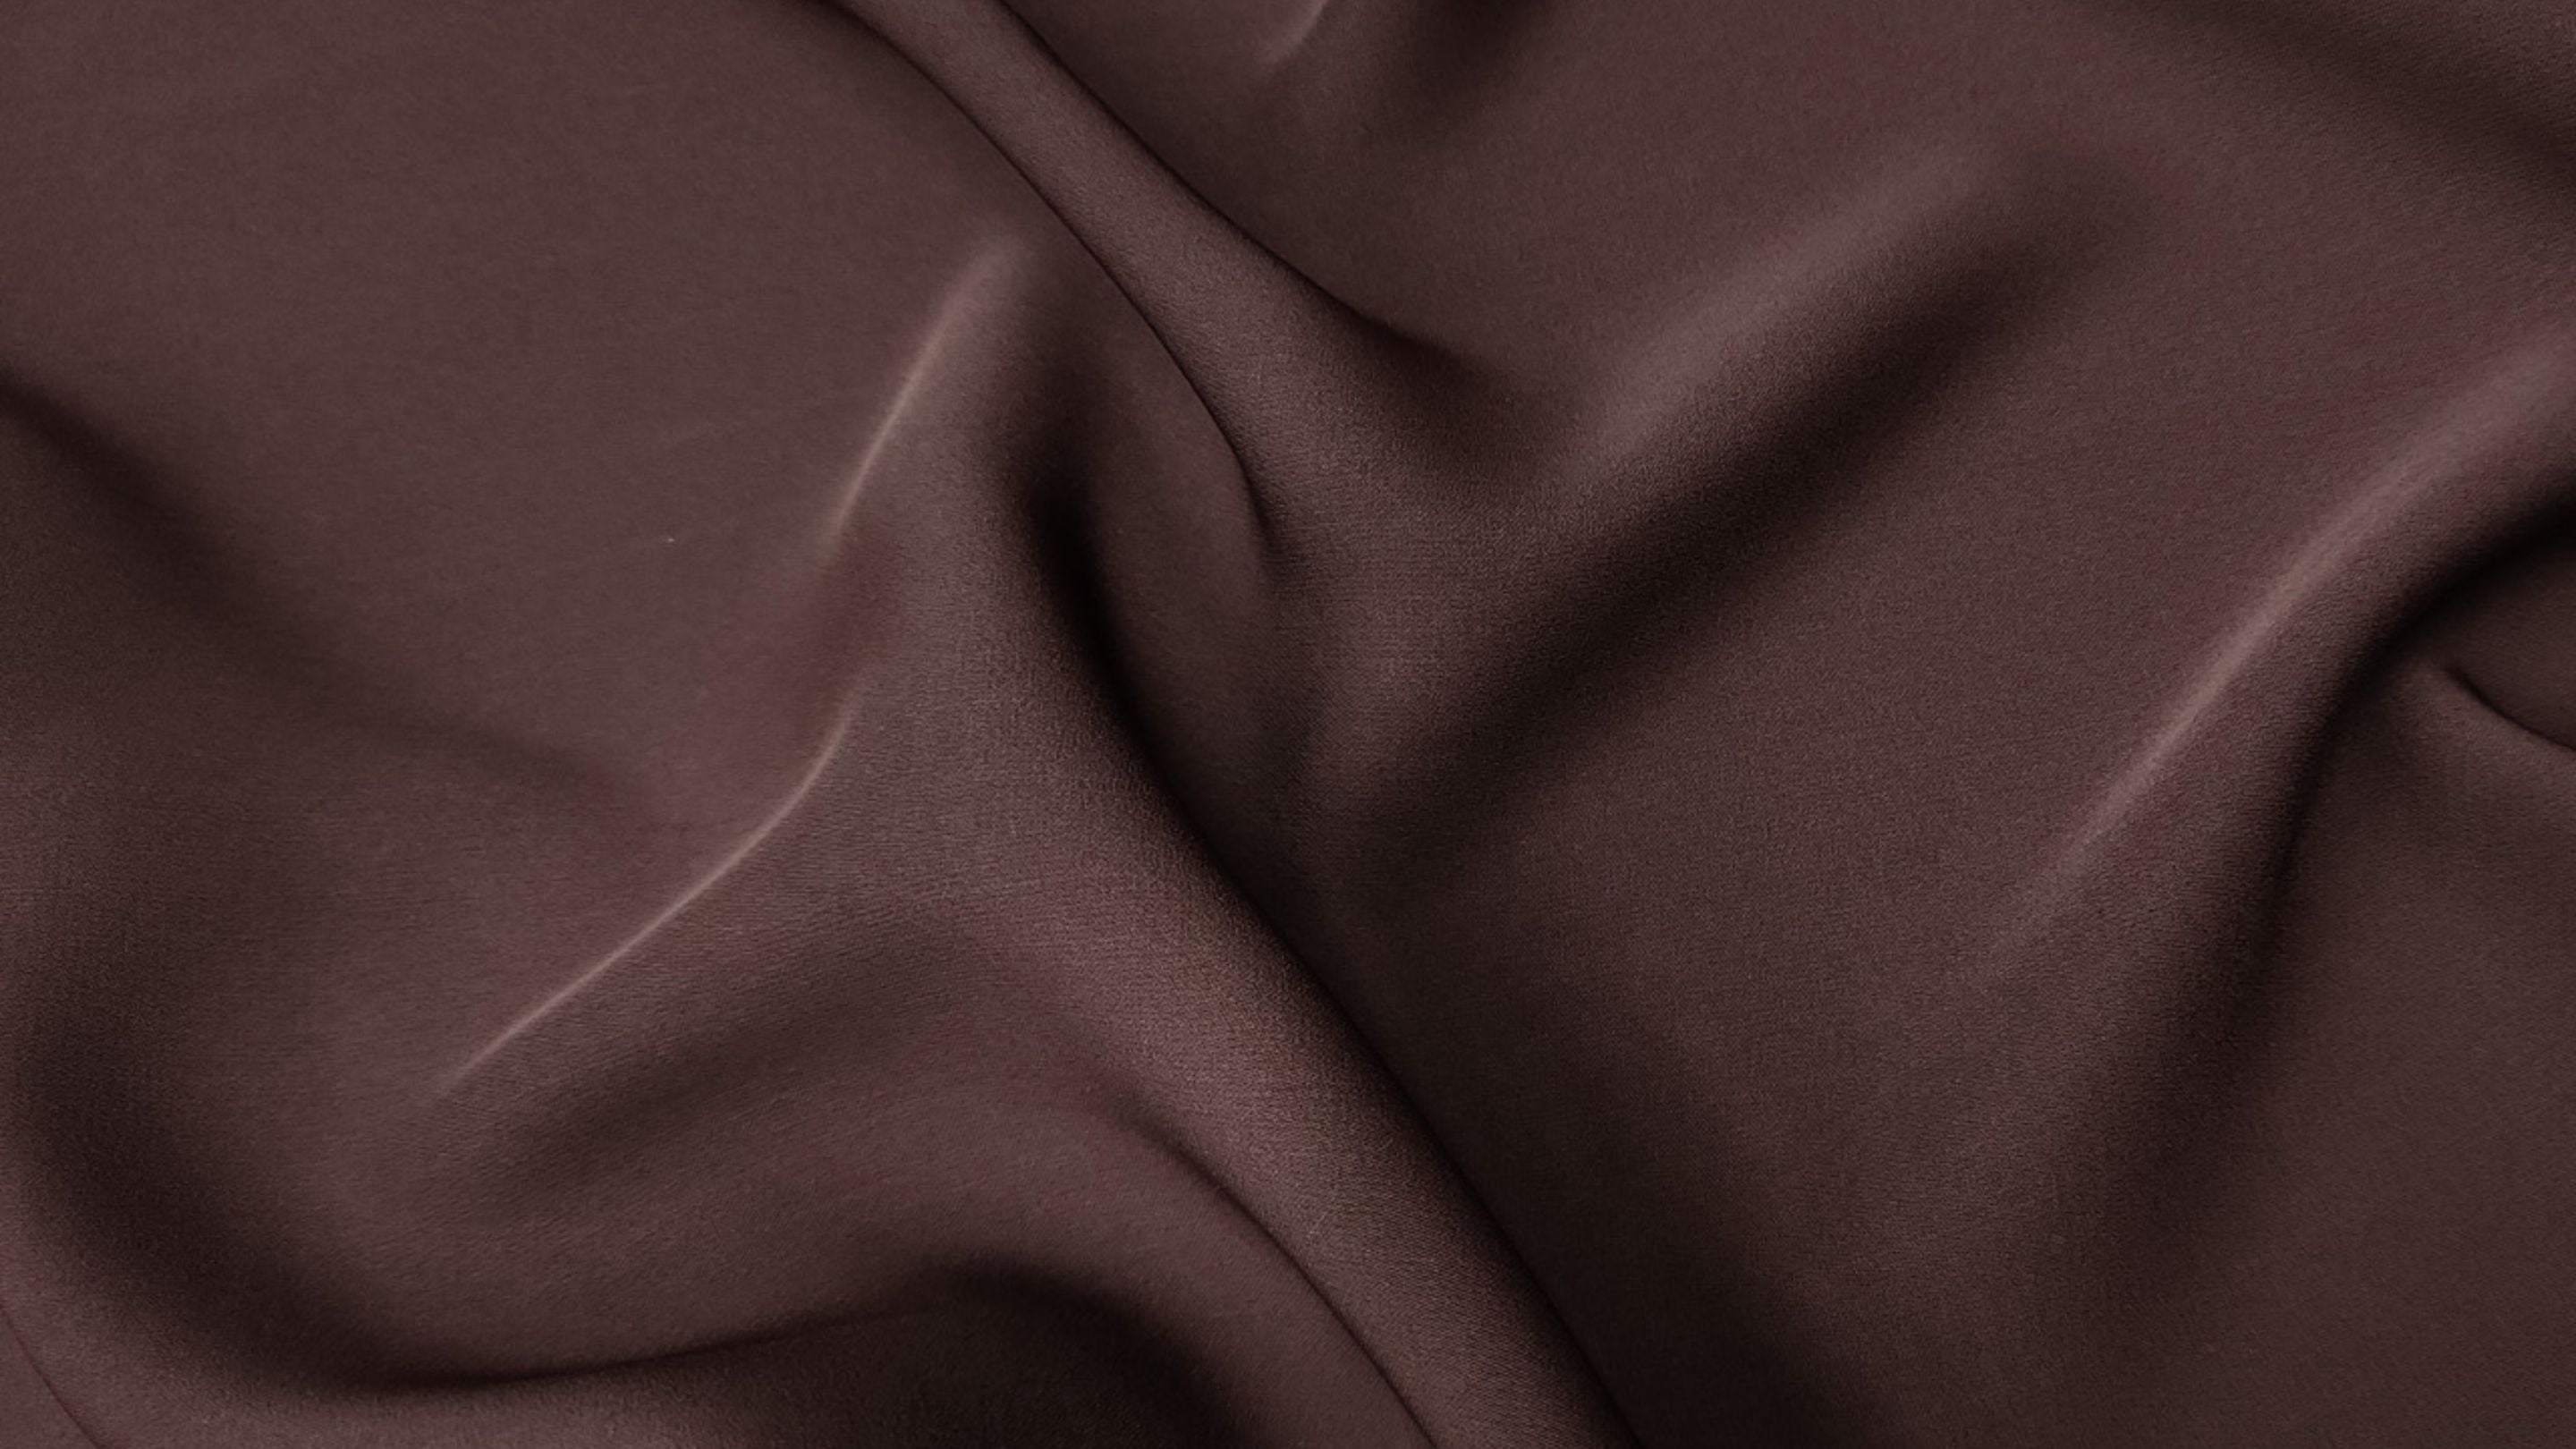 Medina Silk Fabric Closeup - Momina Hijabs